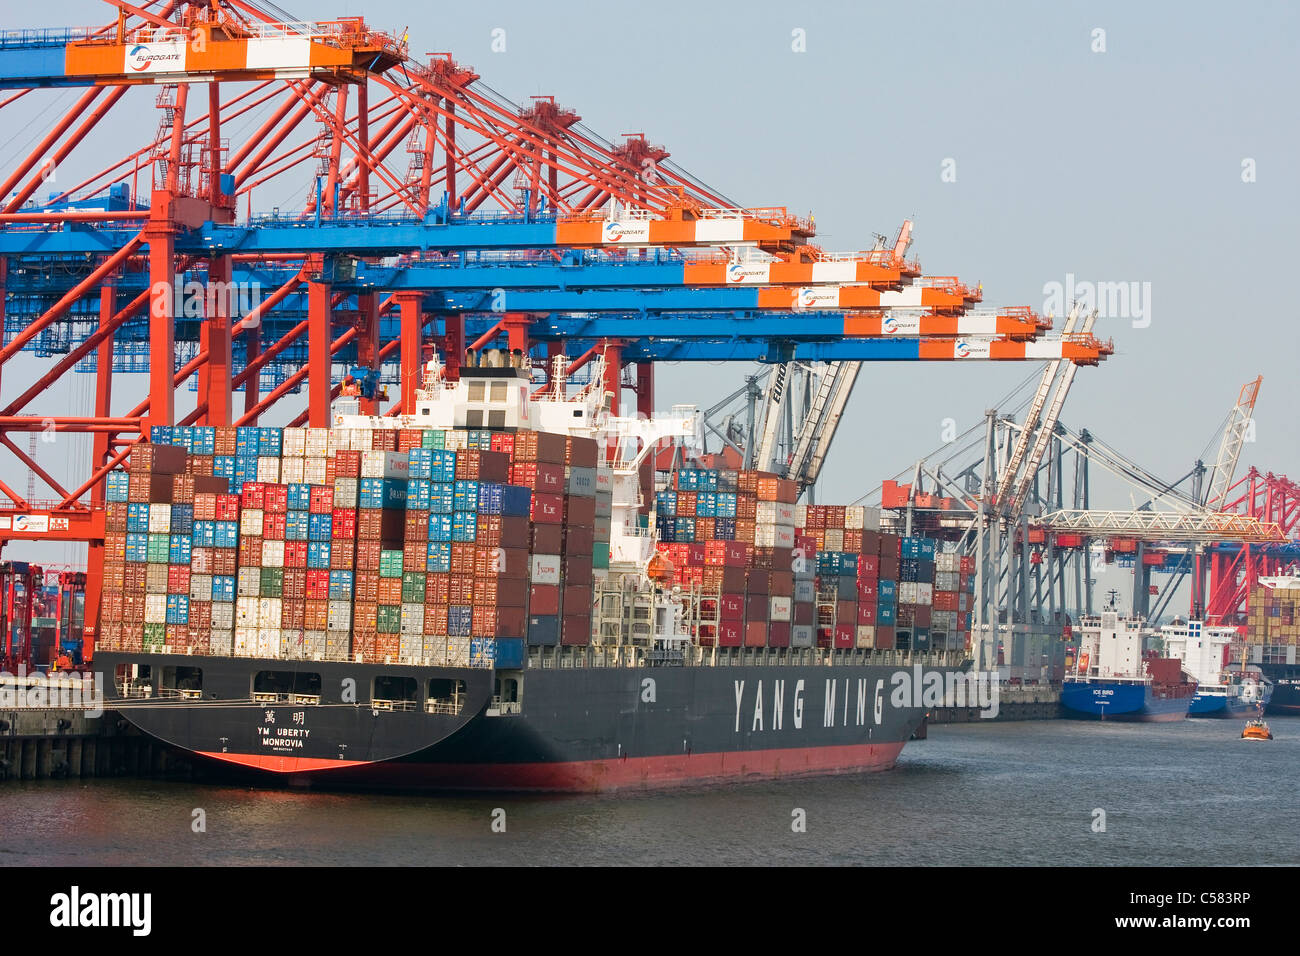 komplexe, außerhalb, Kai Burchard, Geschäft, Container, Container-Häfen, Containerhafen, Containerschiff Containerschiffe, enthalten Stockfoto